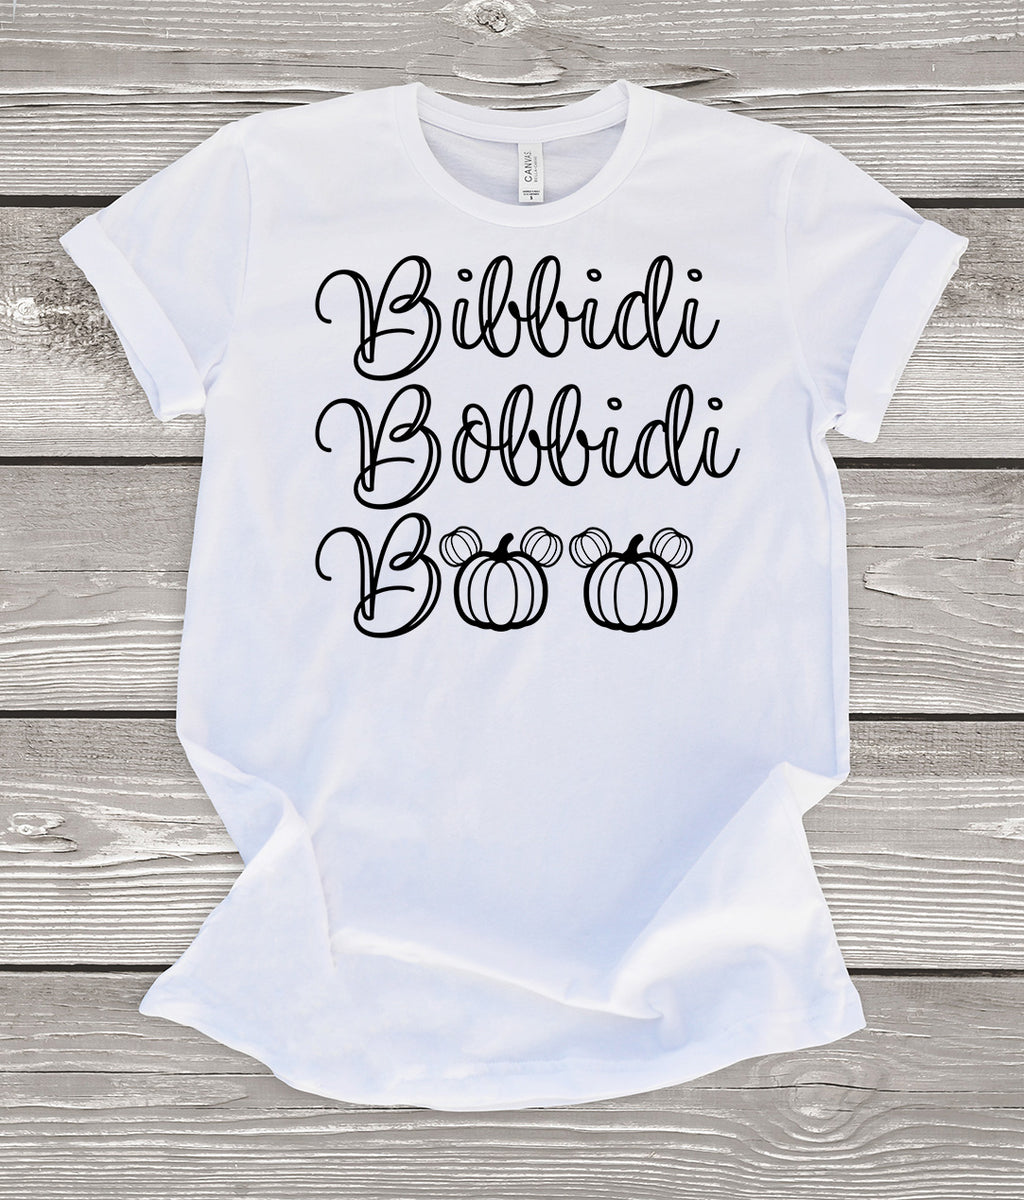 Bibbidi Bobbidi Boo T-Shirt